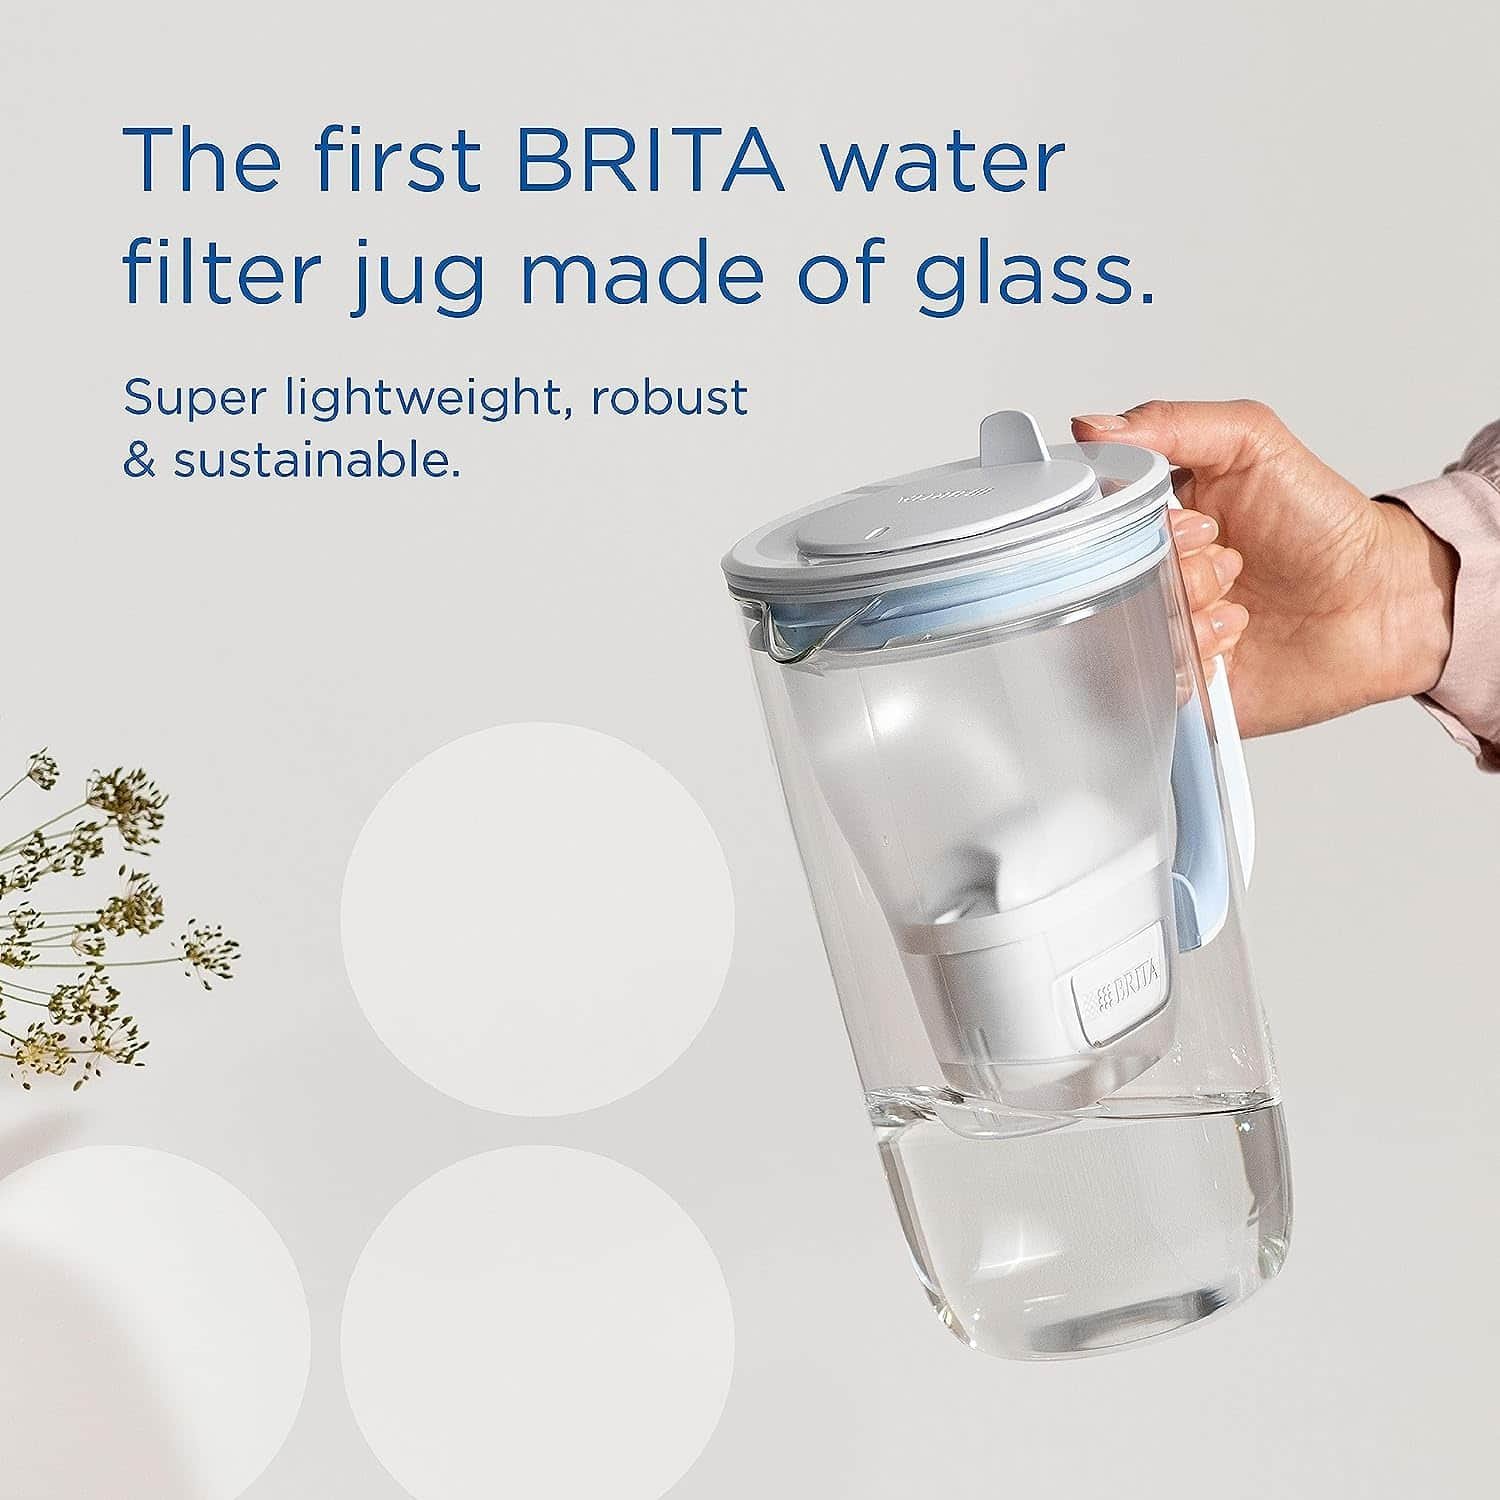 Preparing Brita Elemaris XL Water Filter Jug for First Time Use